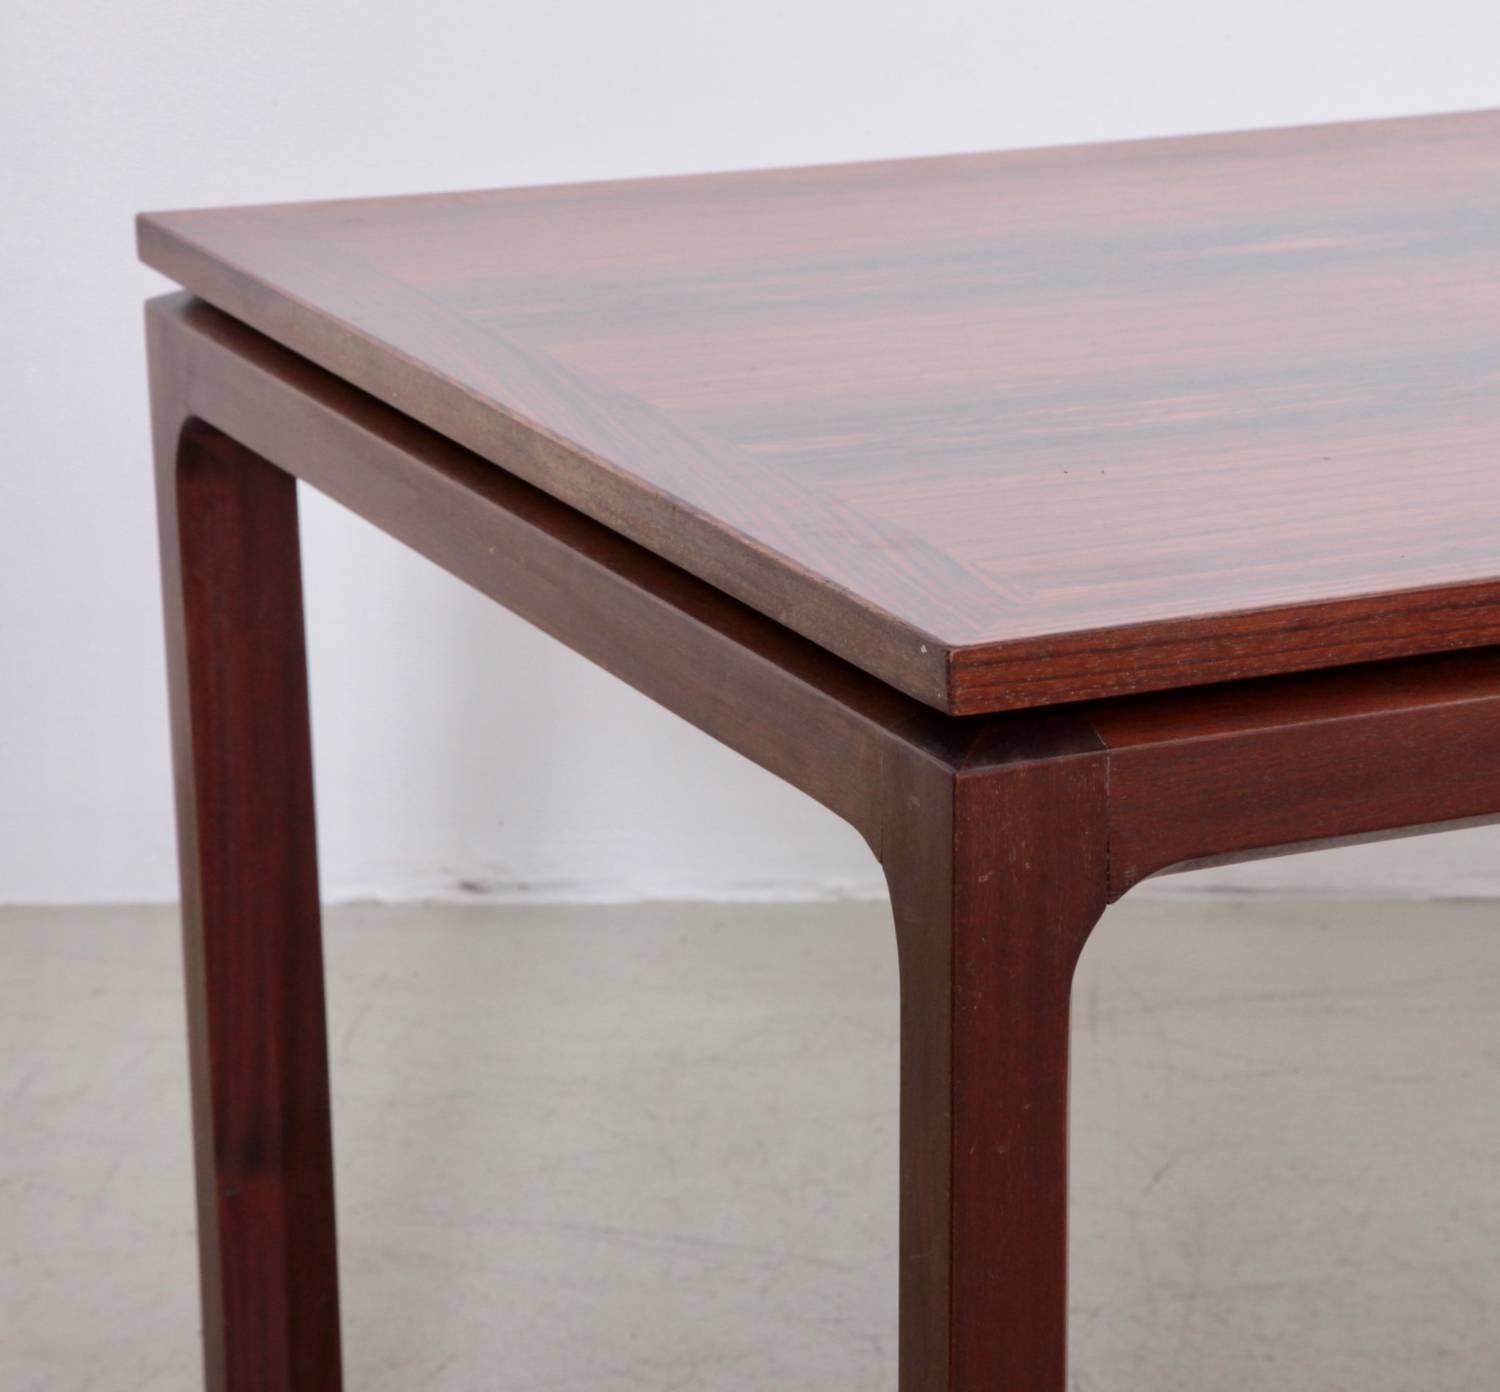 Table en bois en excellent état, base solide et plateau en placage de bois à grains fins.

